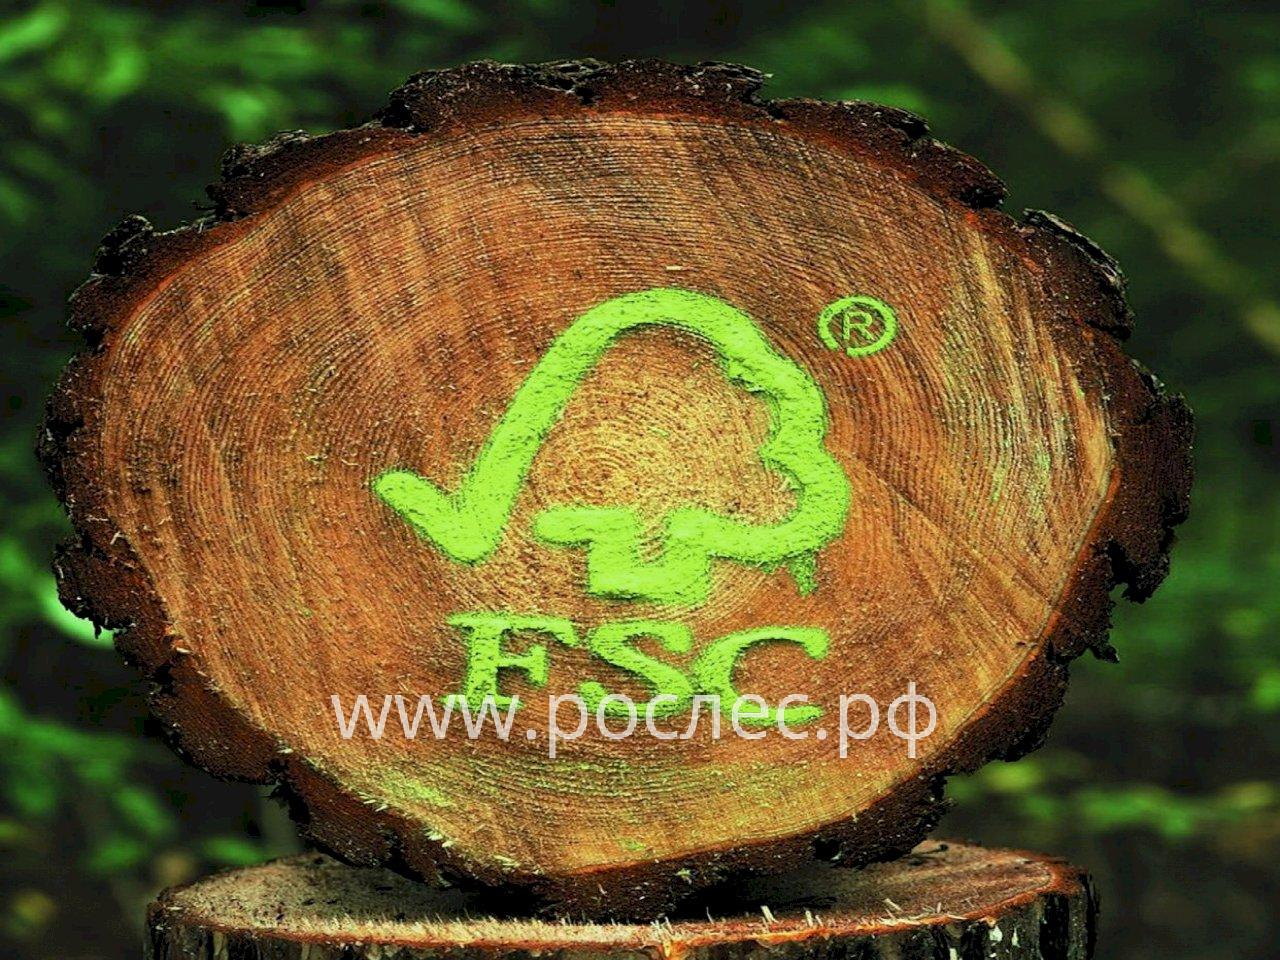 Продукция из российской древесины с апреля не сможет продаваться как FSC-сертифицированная